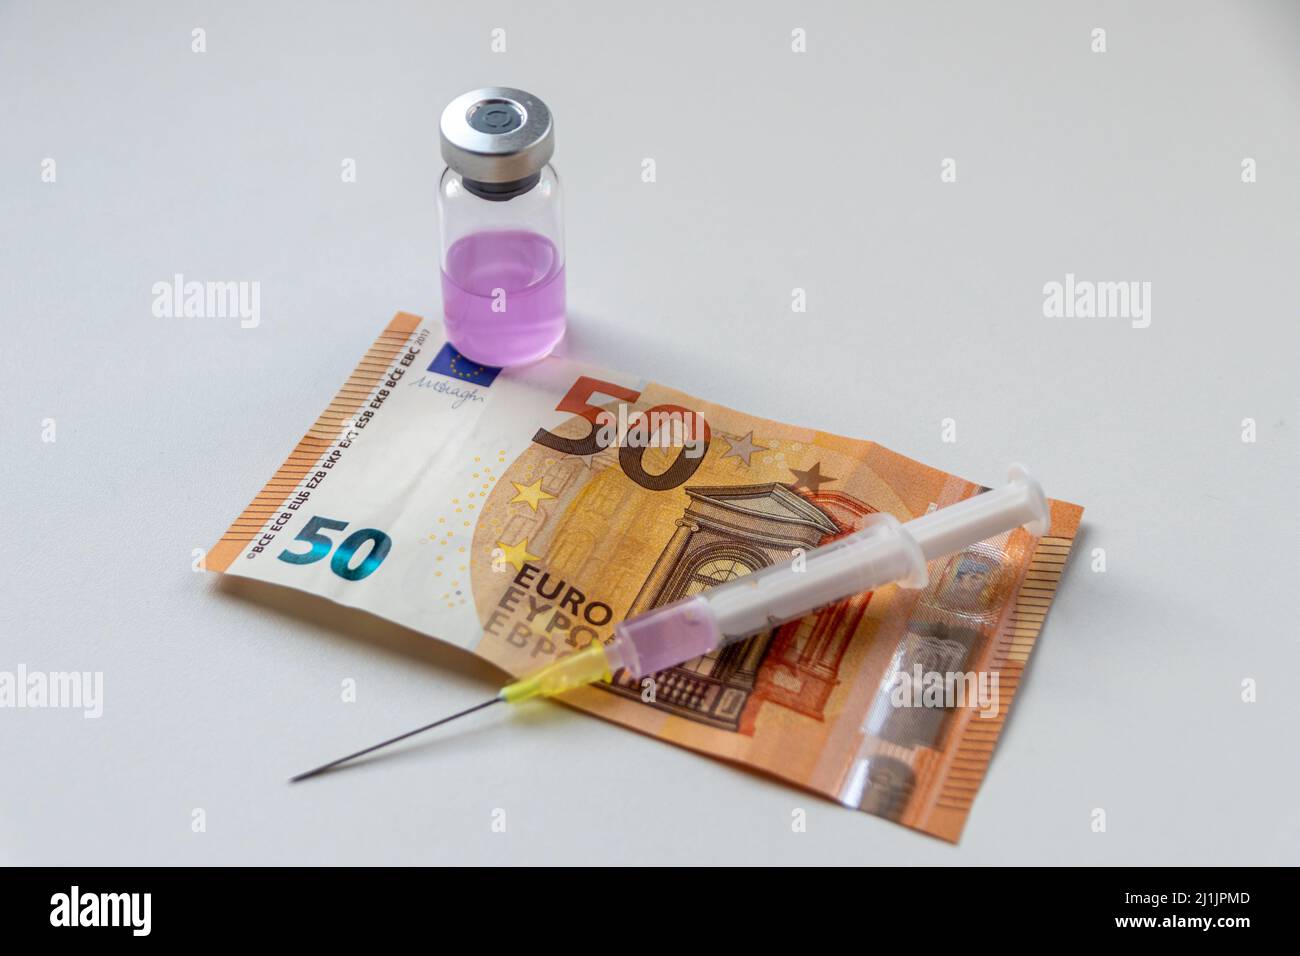 50 Euro Banknote und Injektionsspritze mit rosa medizinischen flüssigen Medizin warten auf einen reichen Patienten, um seine Krankheiten zu heilen, wenn viel Geld für die Gesundheit bezahlt Stockfoto